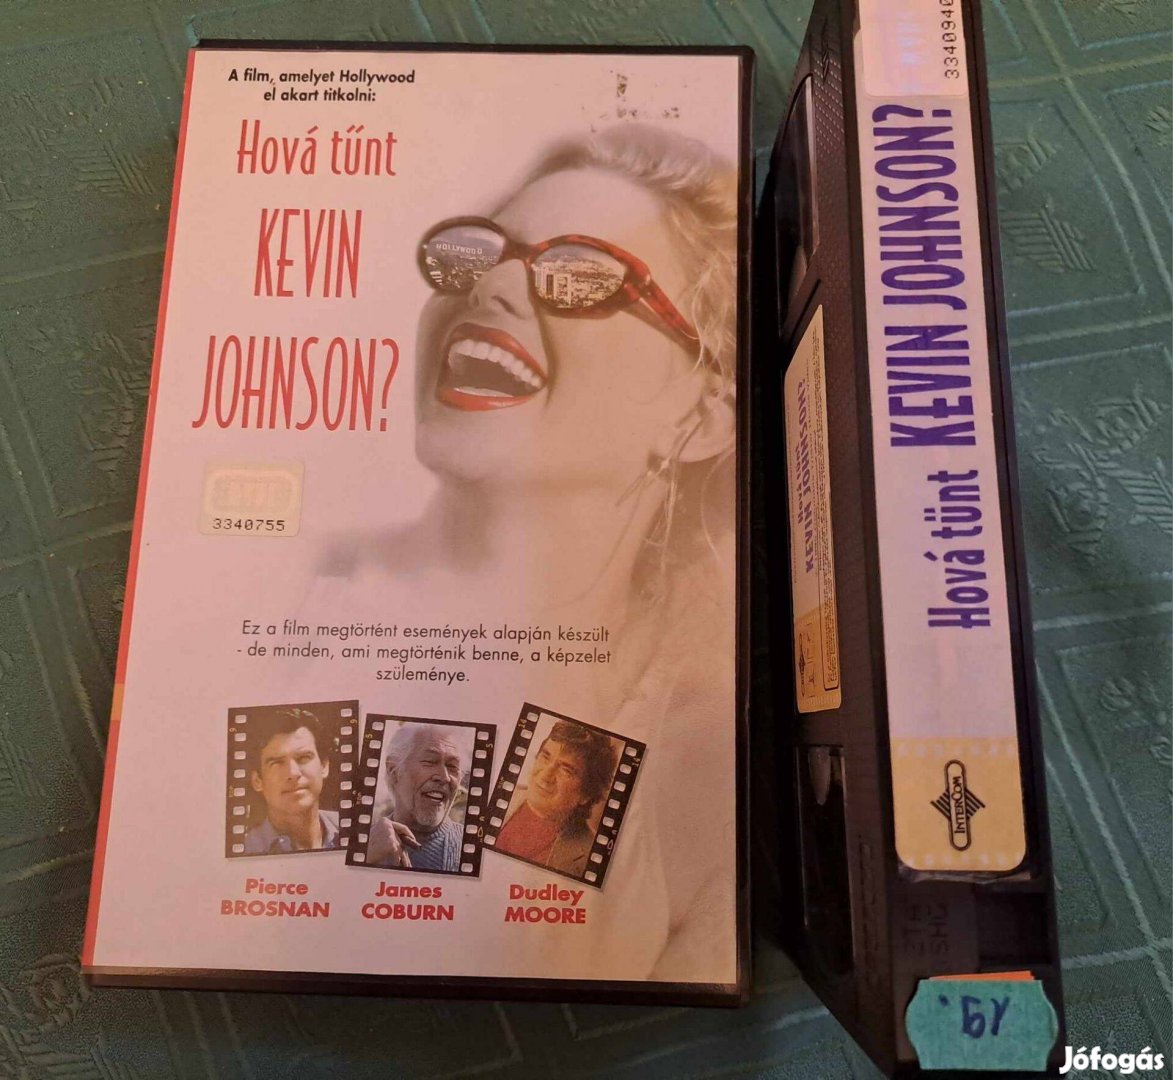 Hová tűnt Kevin Johnson? VHS